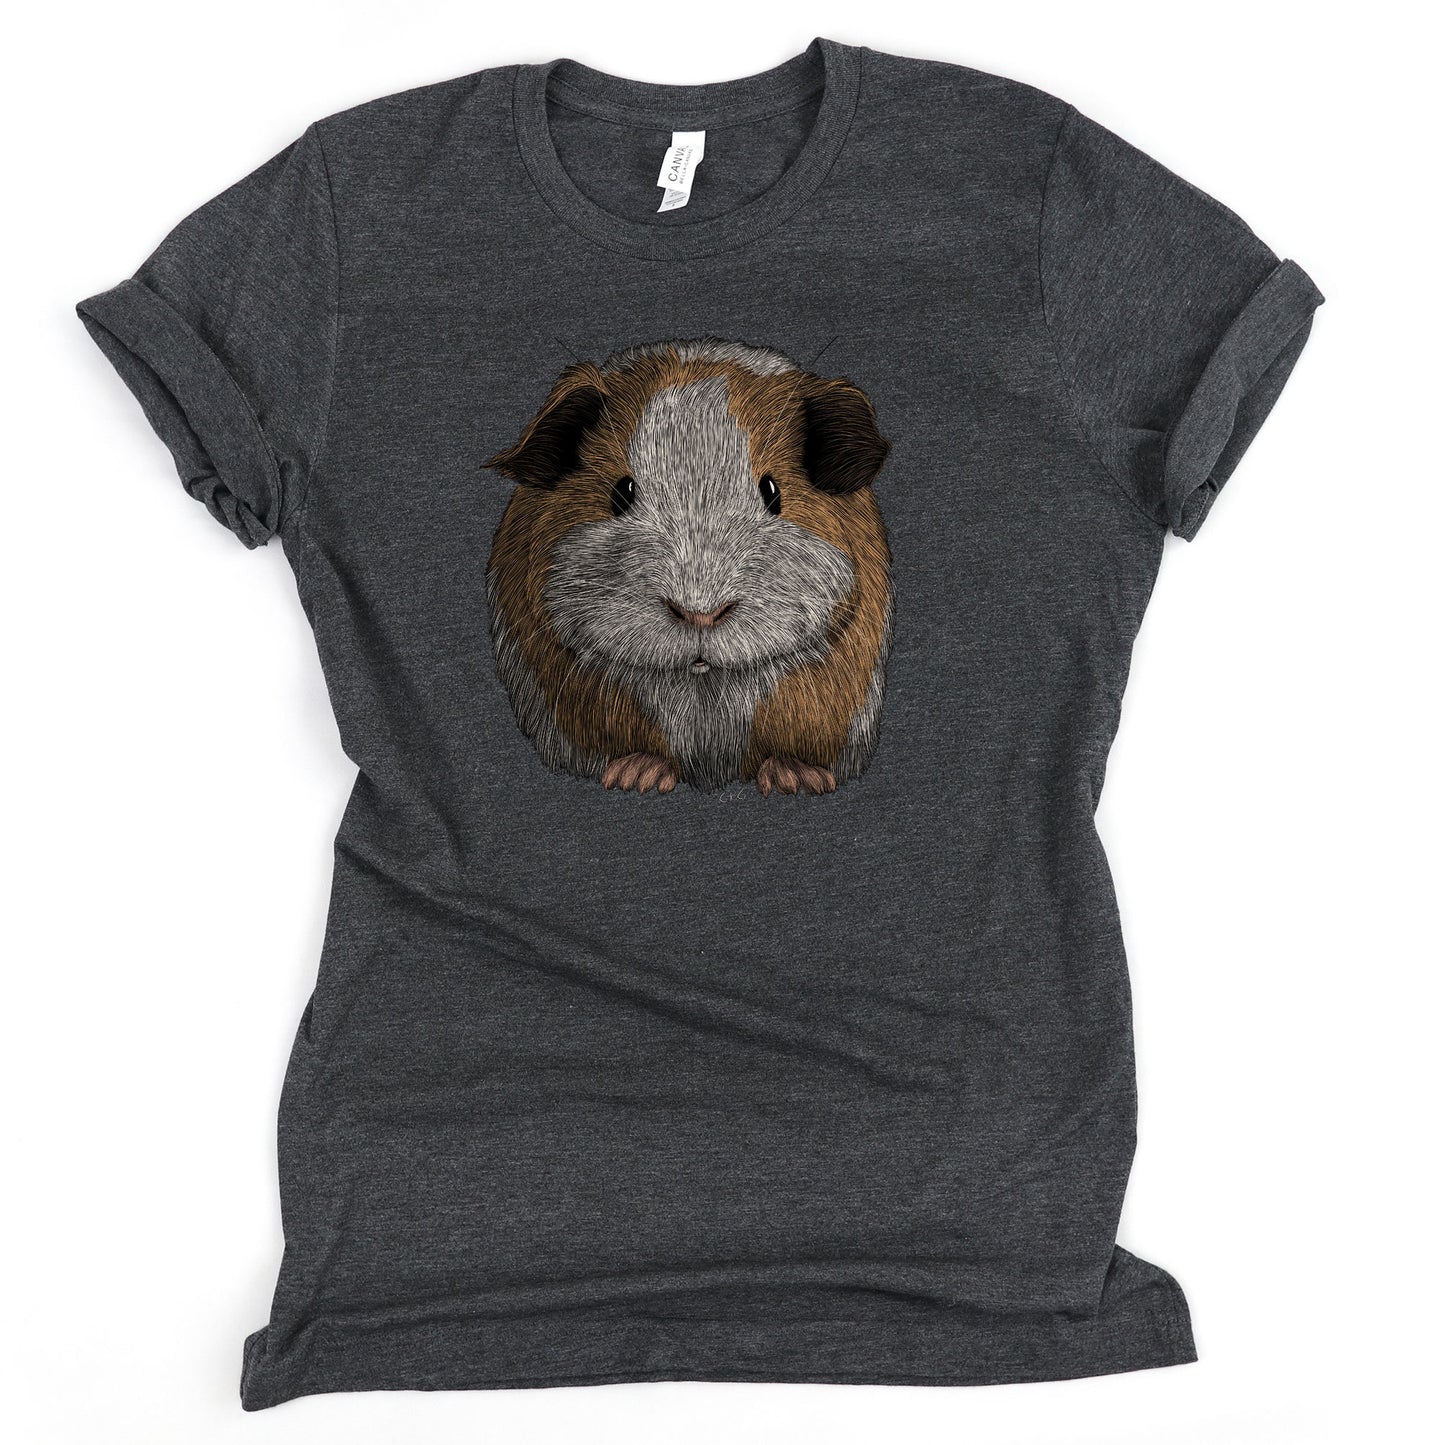 Guinea Pig Shirt